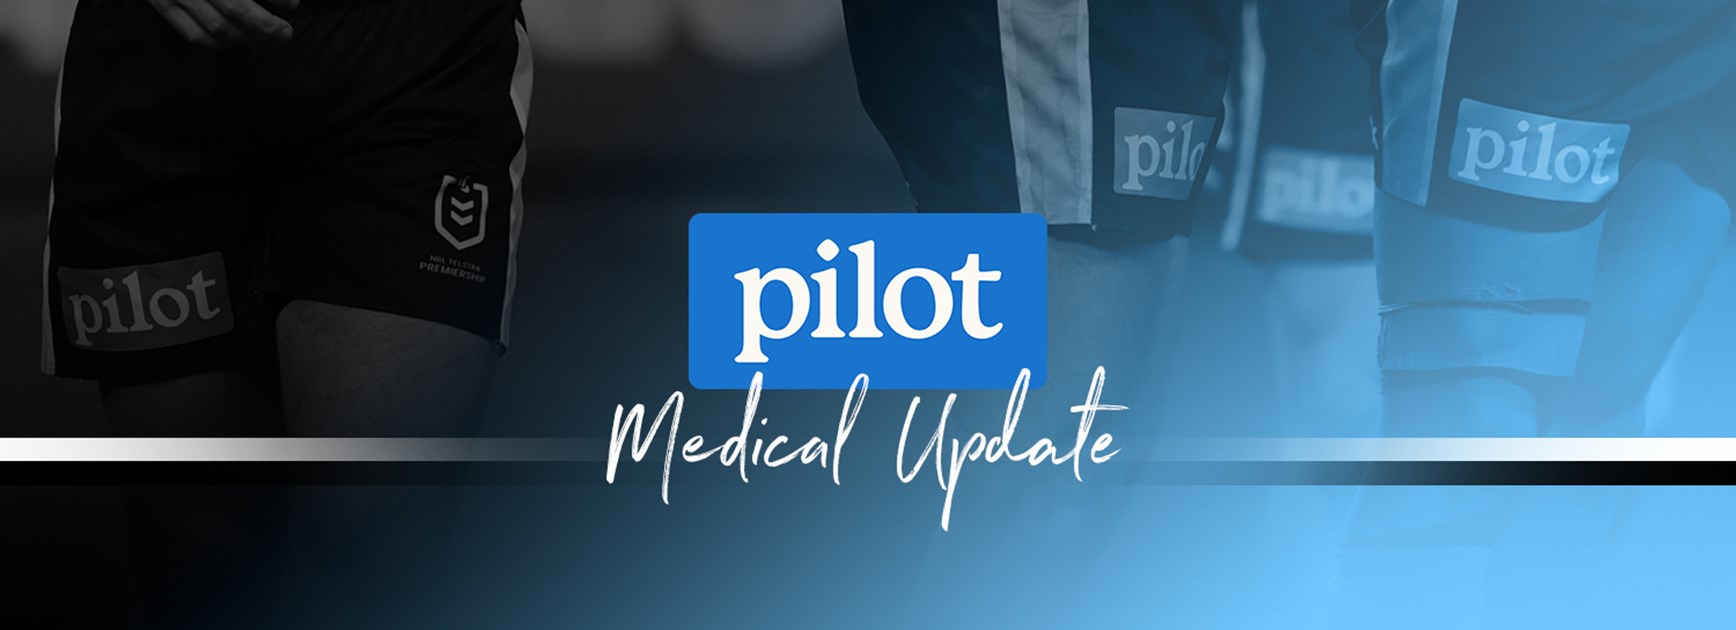 Pilot Medical Update – Dale Finucane